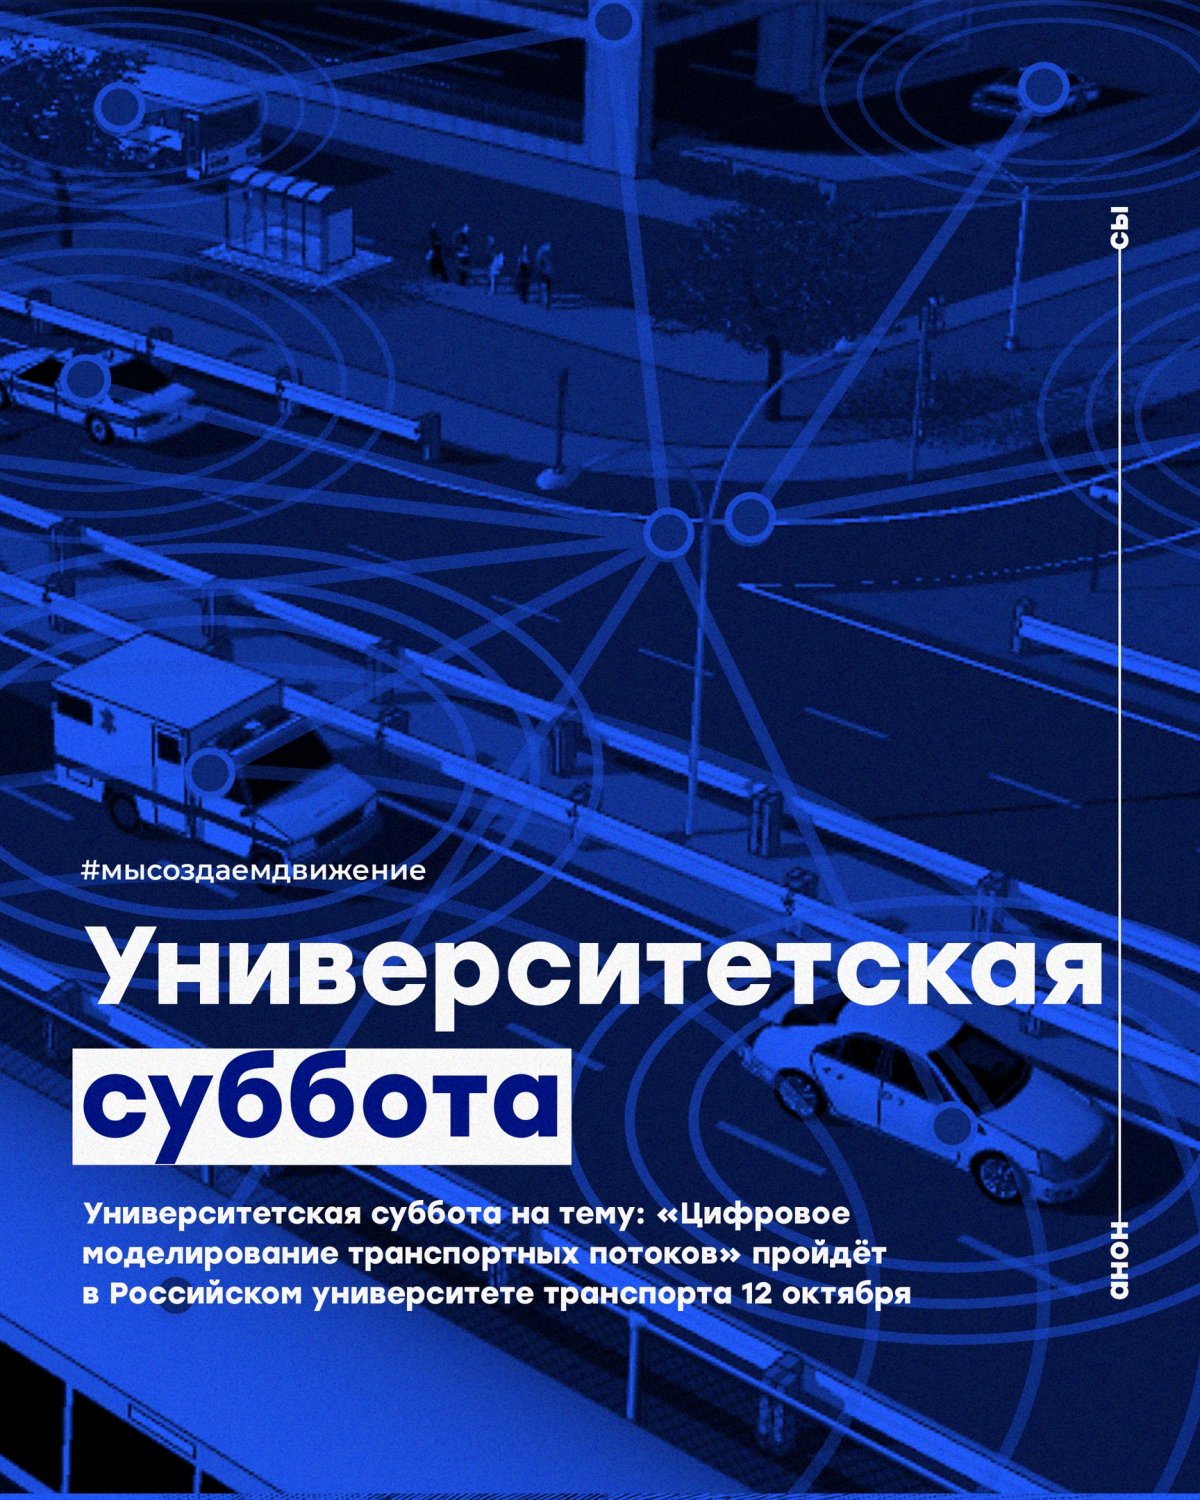 Университетская суббота на тему: «Цифровое моделирование транспортных потоков» пройдёт в Российском университете транспорта 12 октября